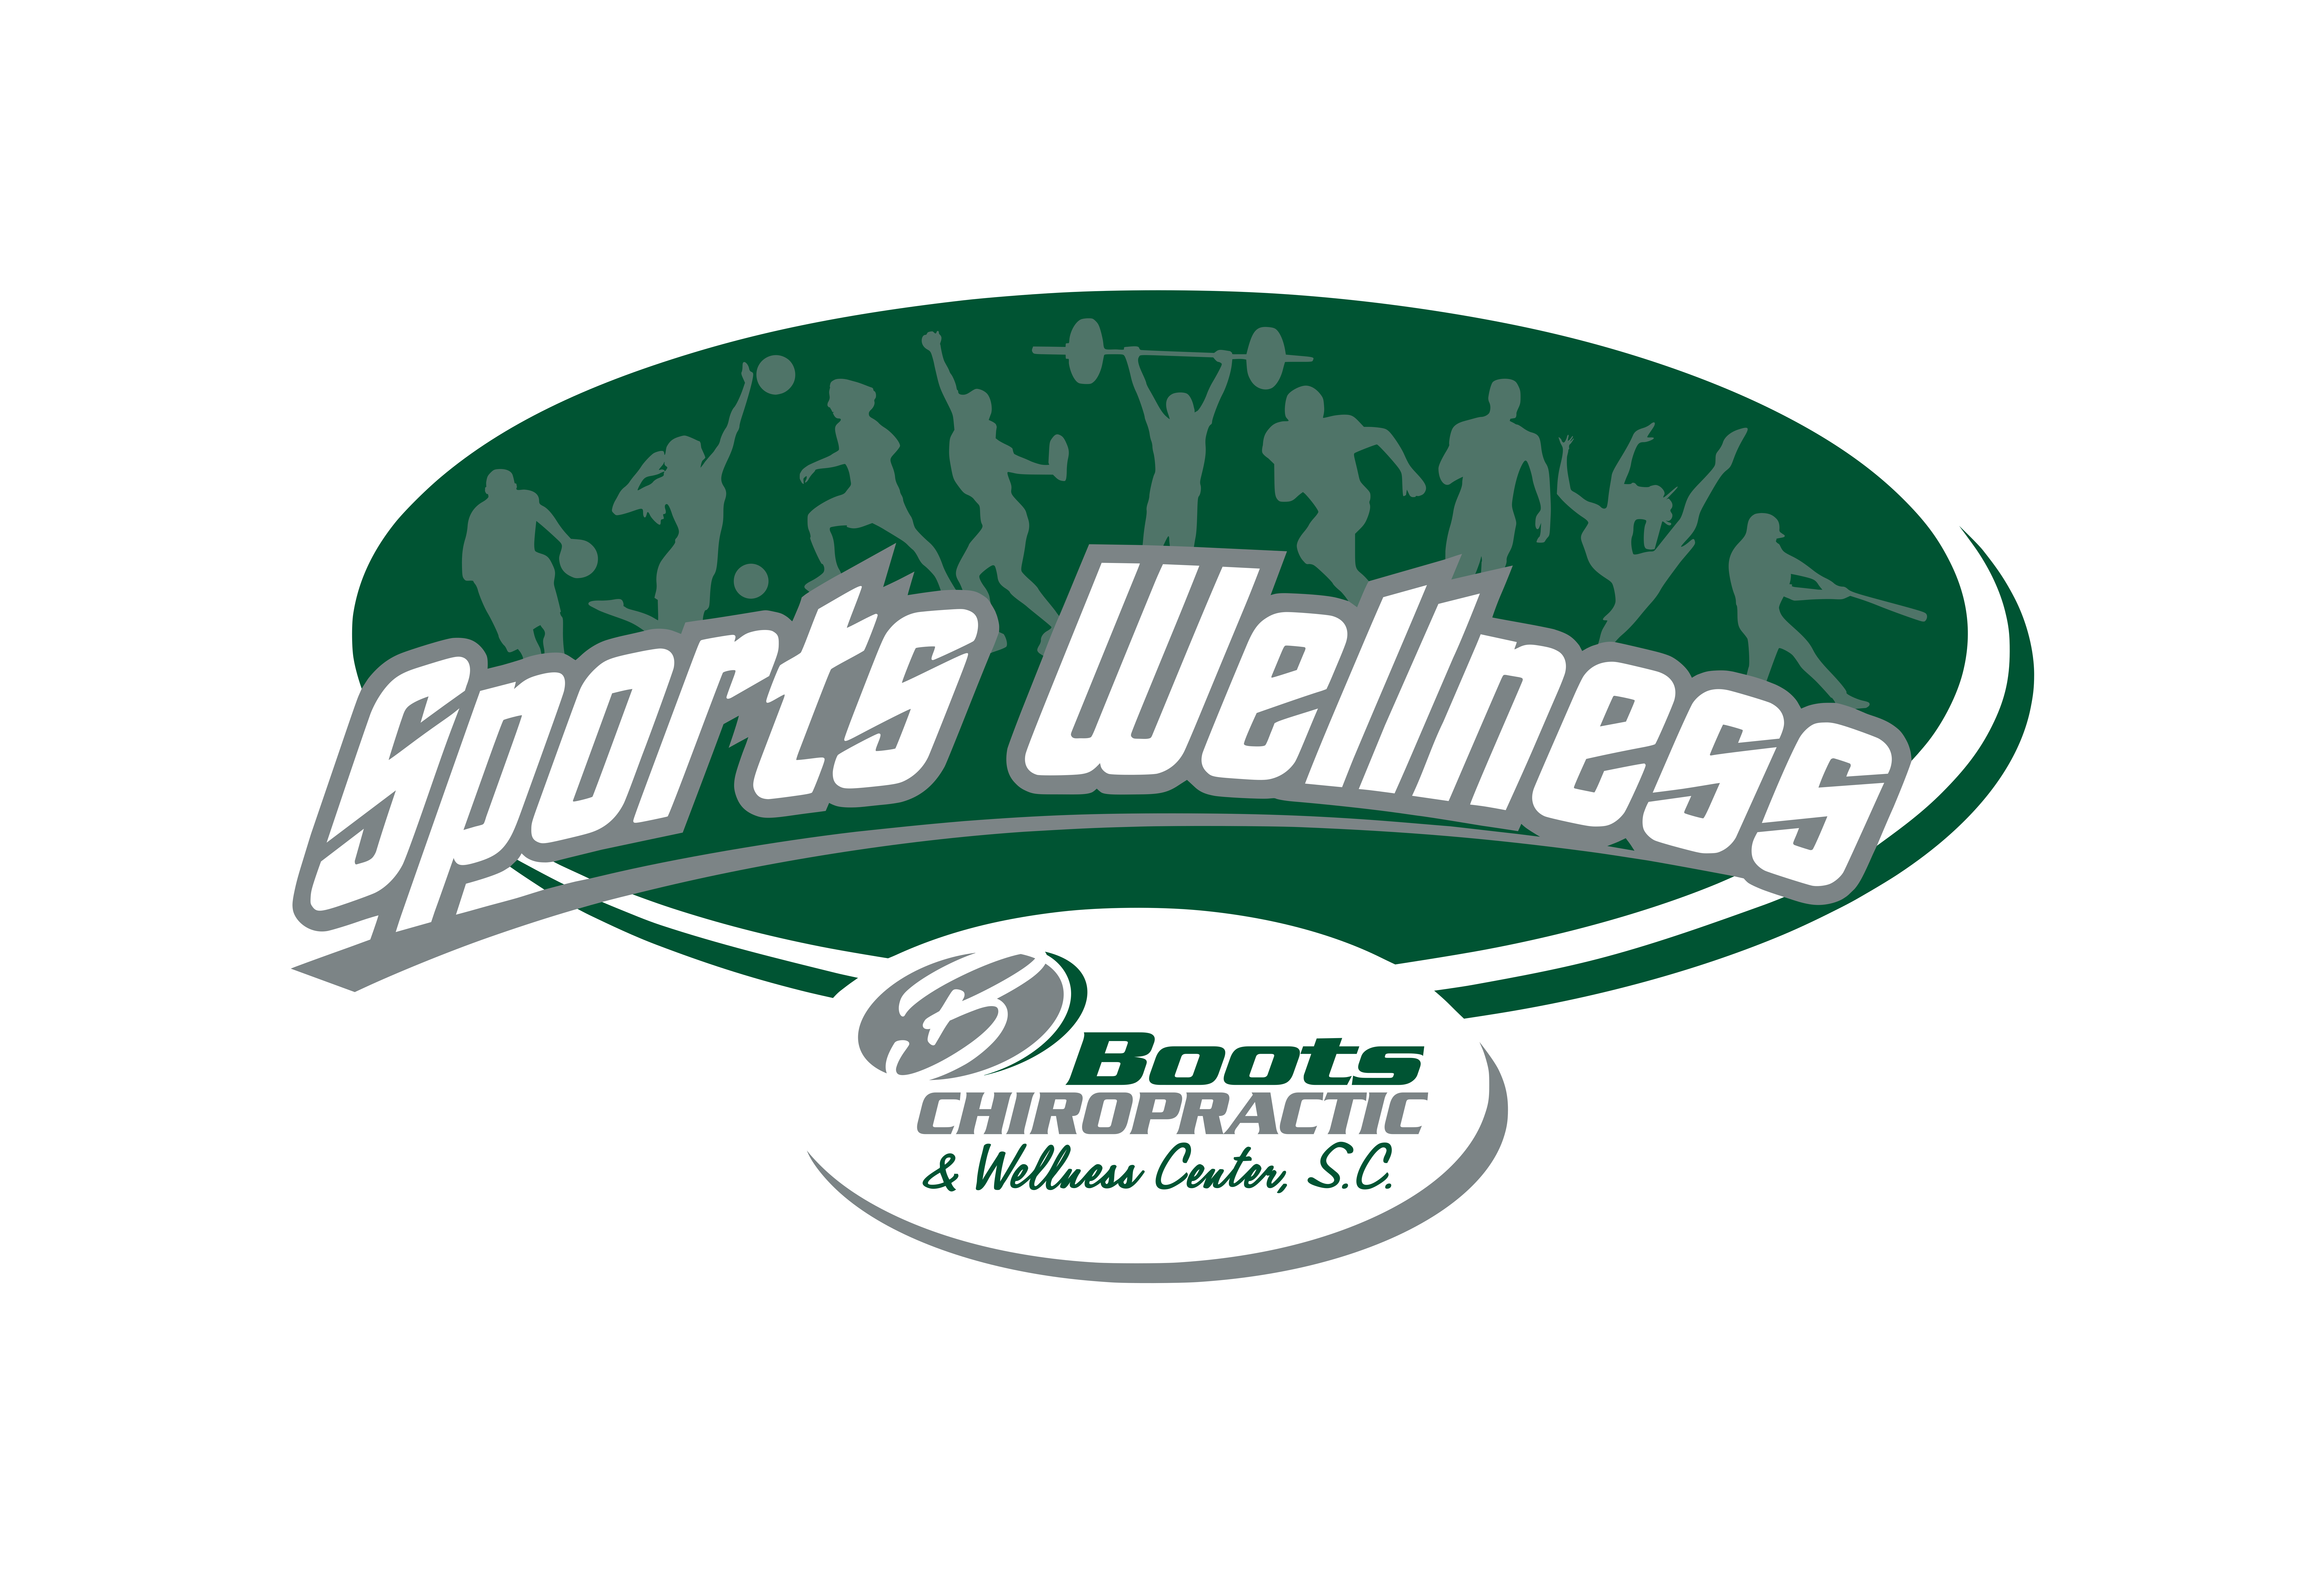 Sports Wellness